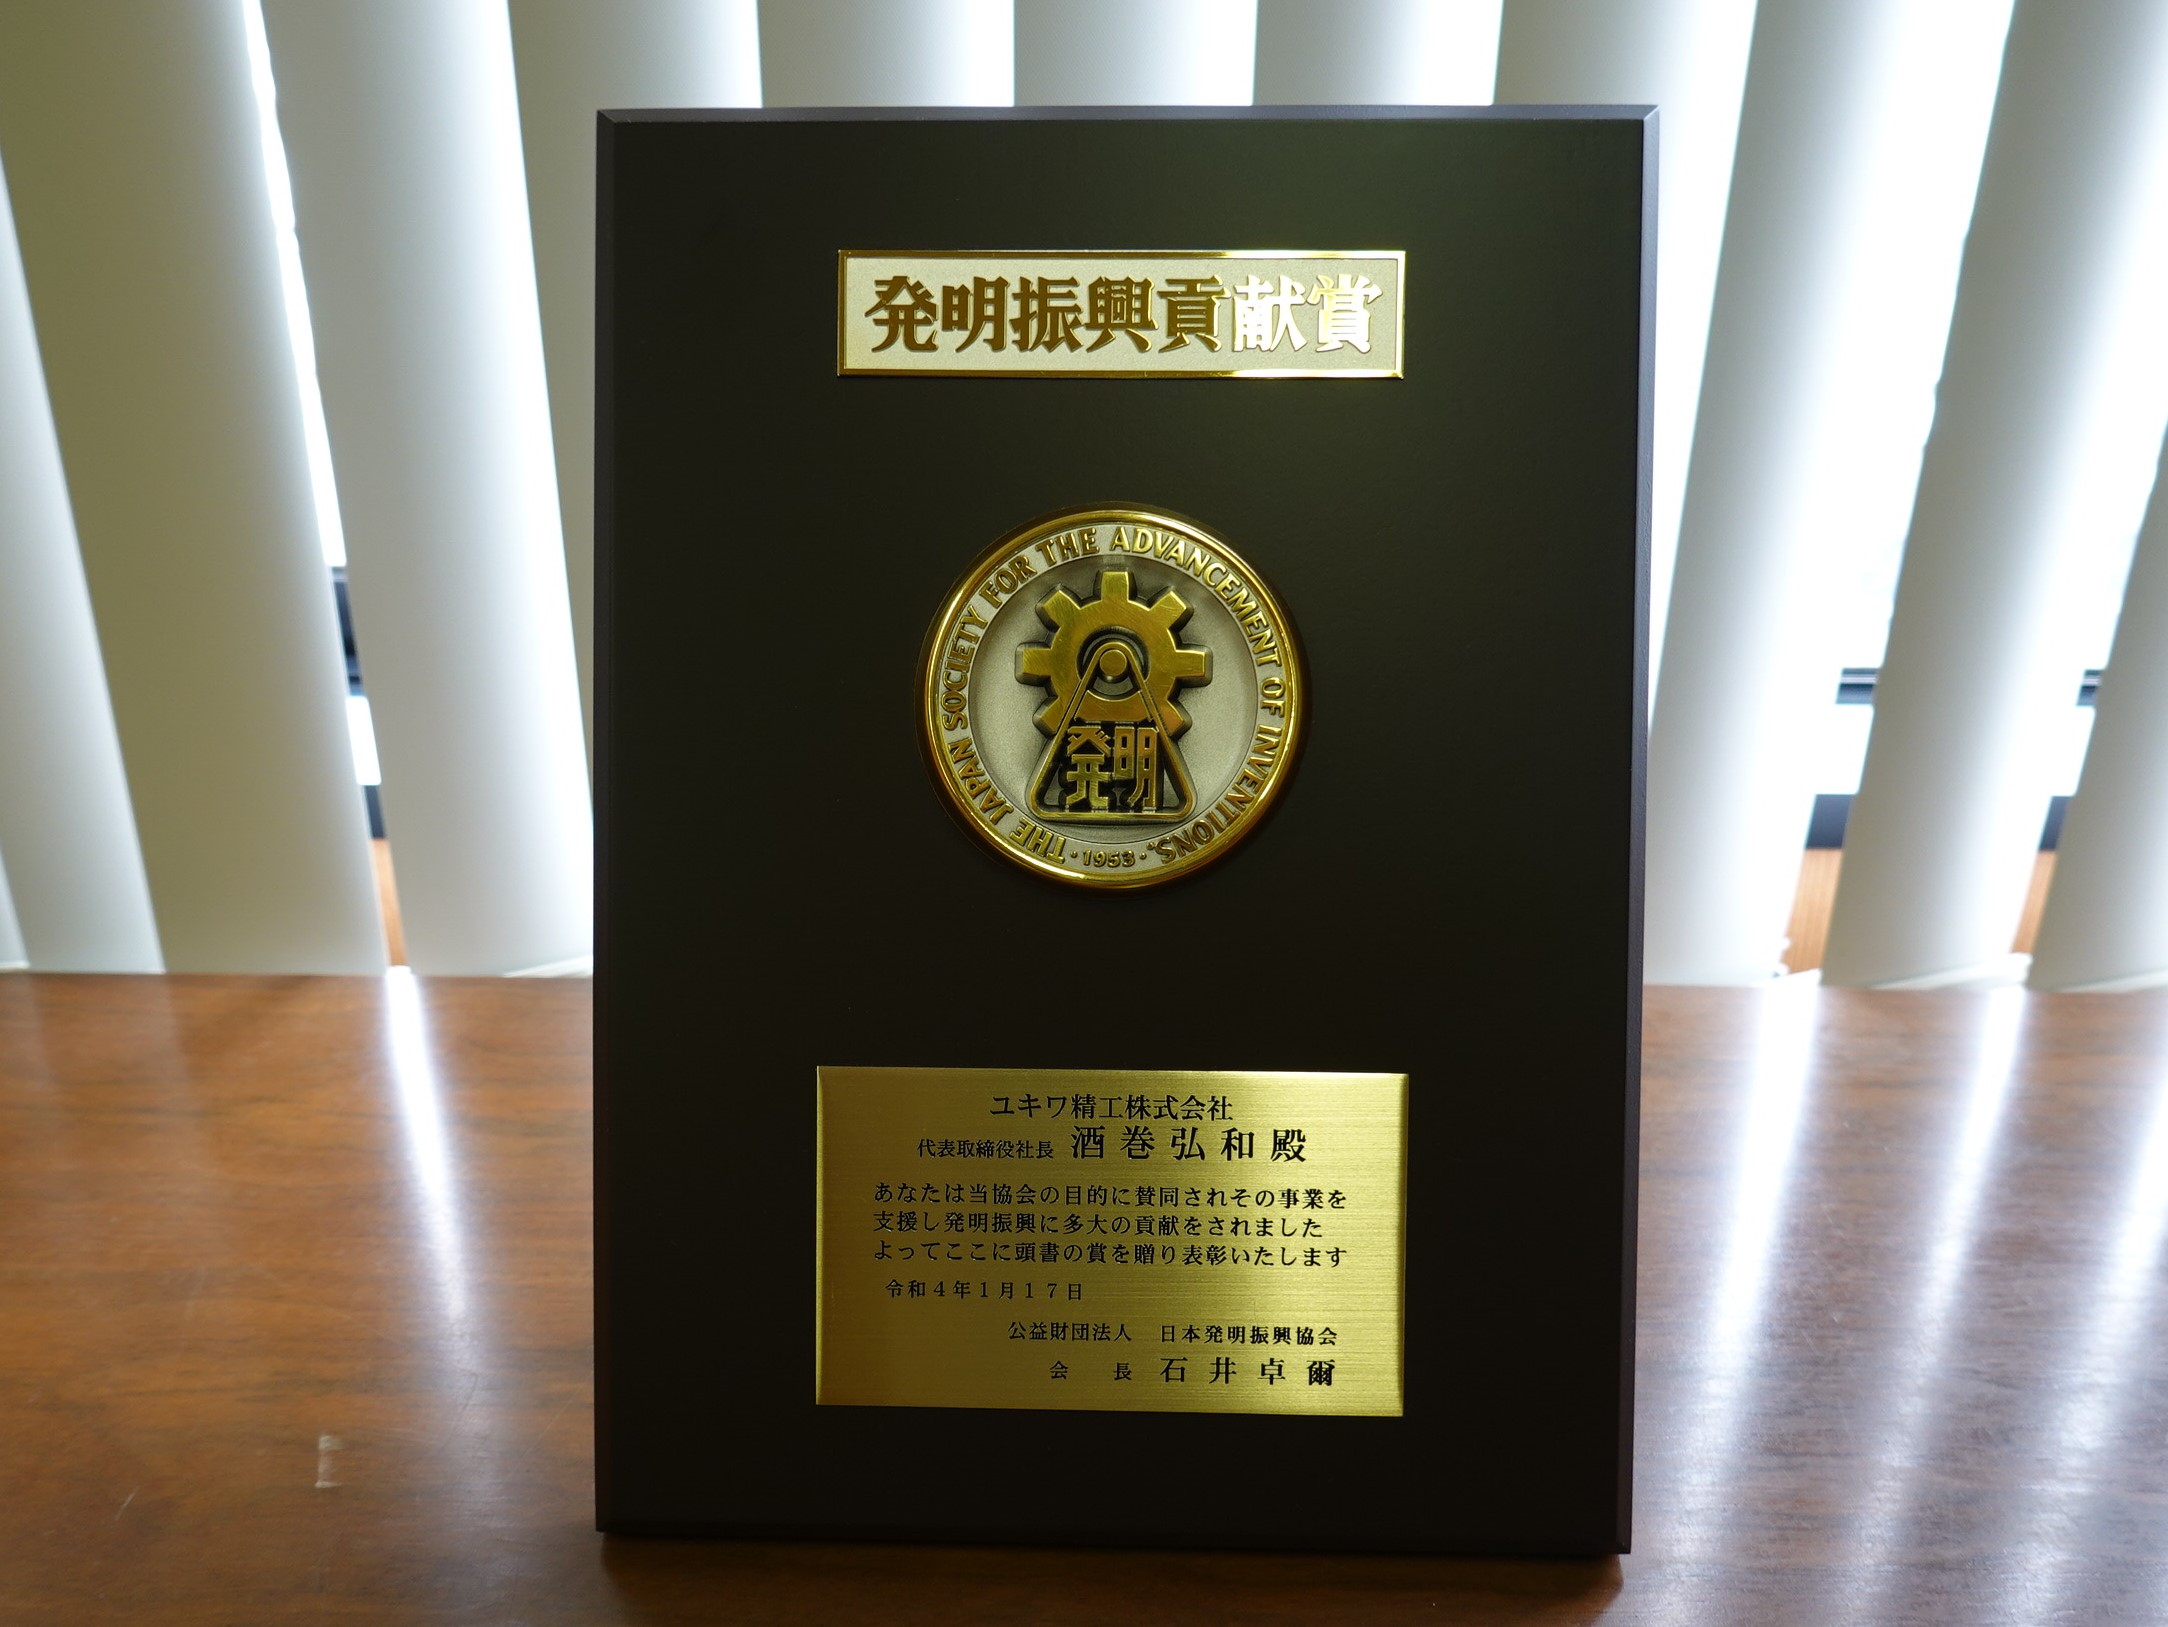 日本発明振興協会から発明振興貢献賞を受賞しました。